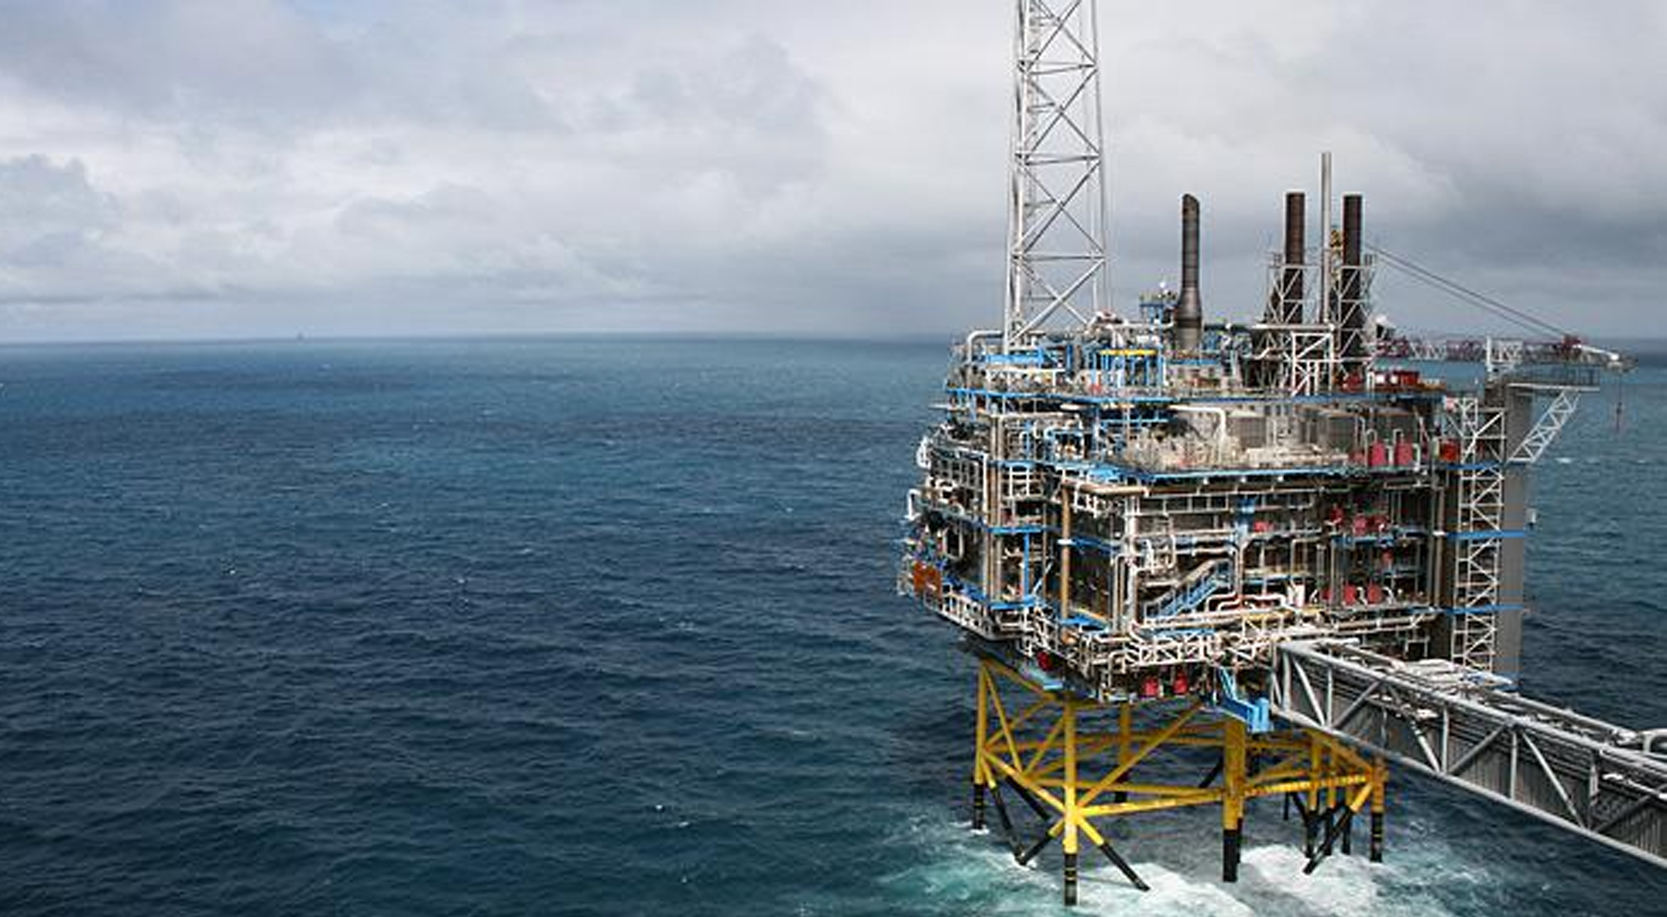 Нефтедобыча в Баренцевом море может потребовать тесного сотрудничества между Норвегией и Россией